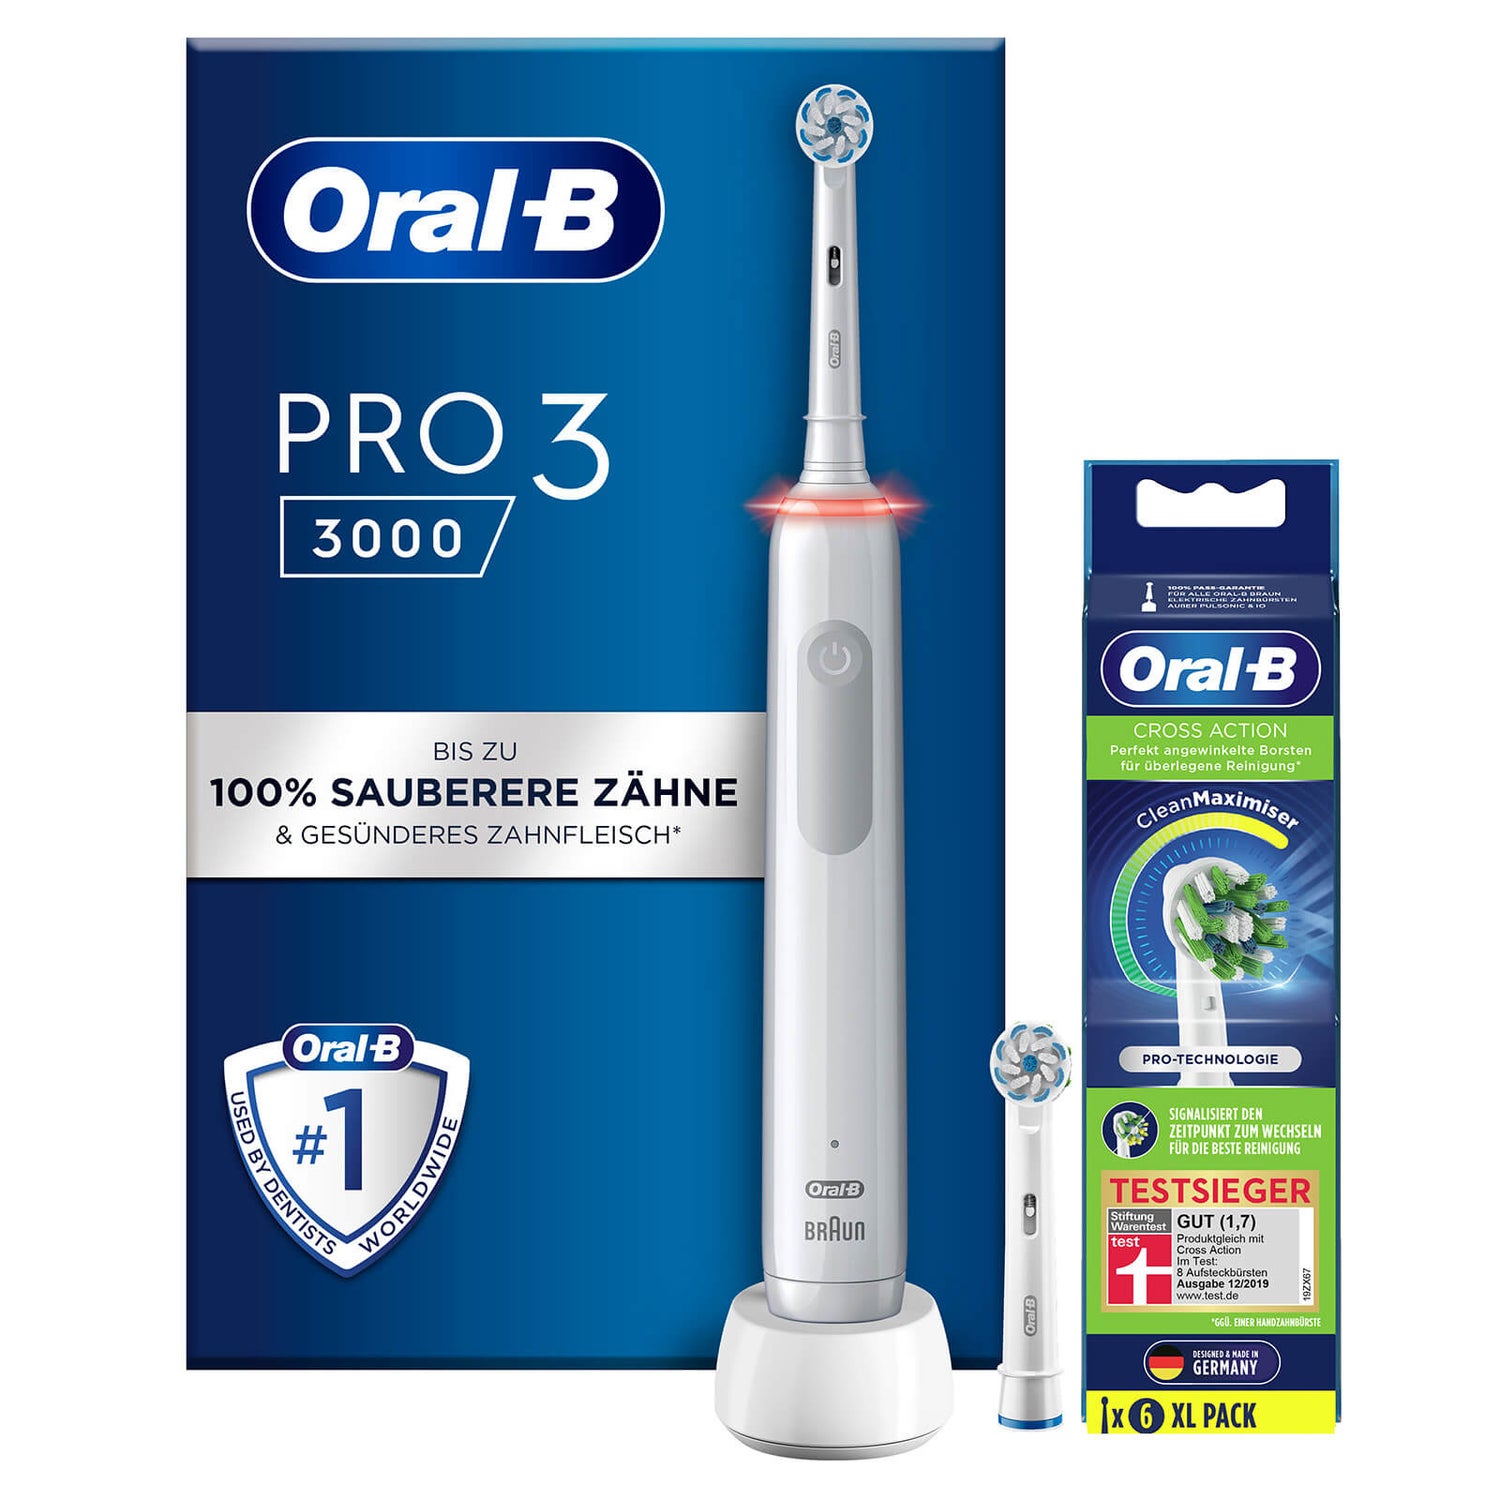 Oral-B Power Pro 3 3000 Elektrische Zahnbürste, White